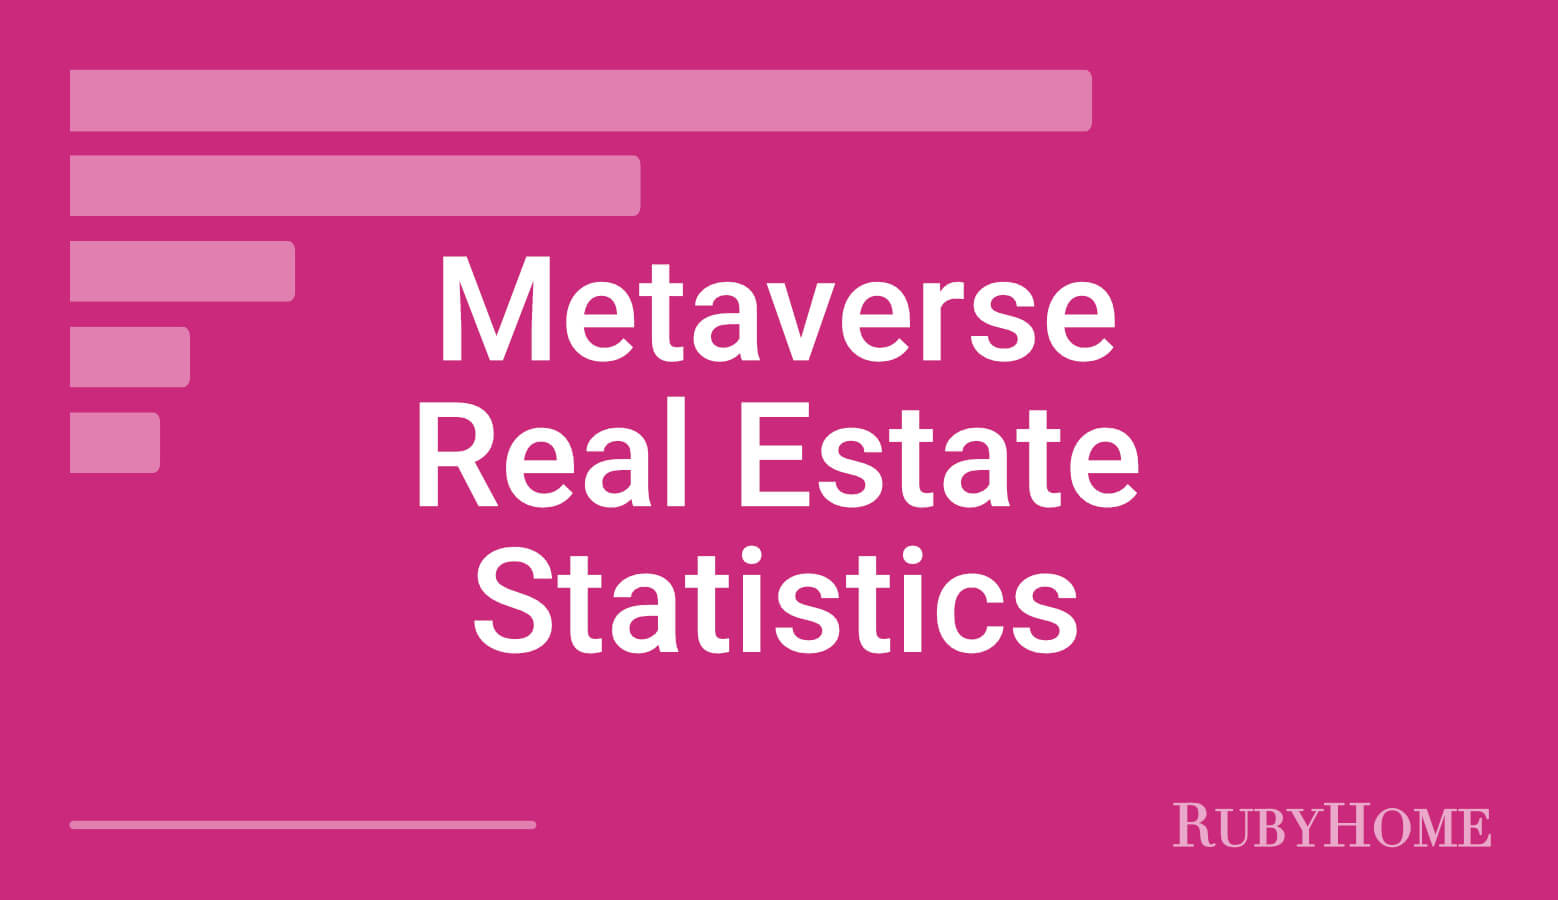 Metaverse Real Estate Statistics